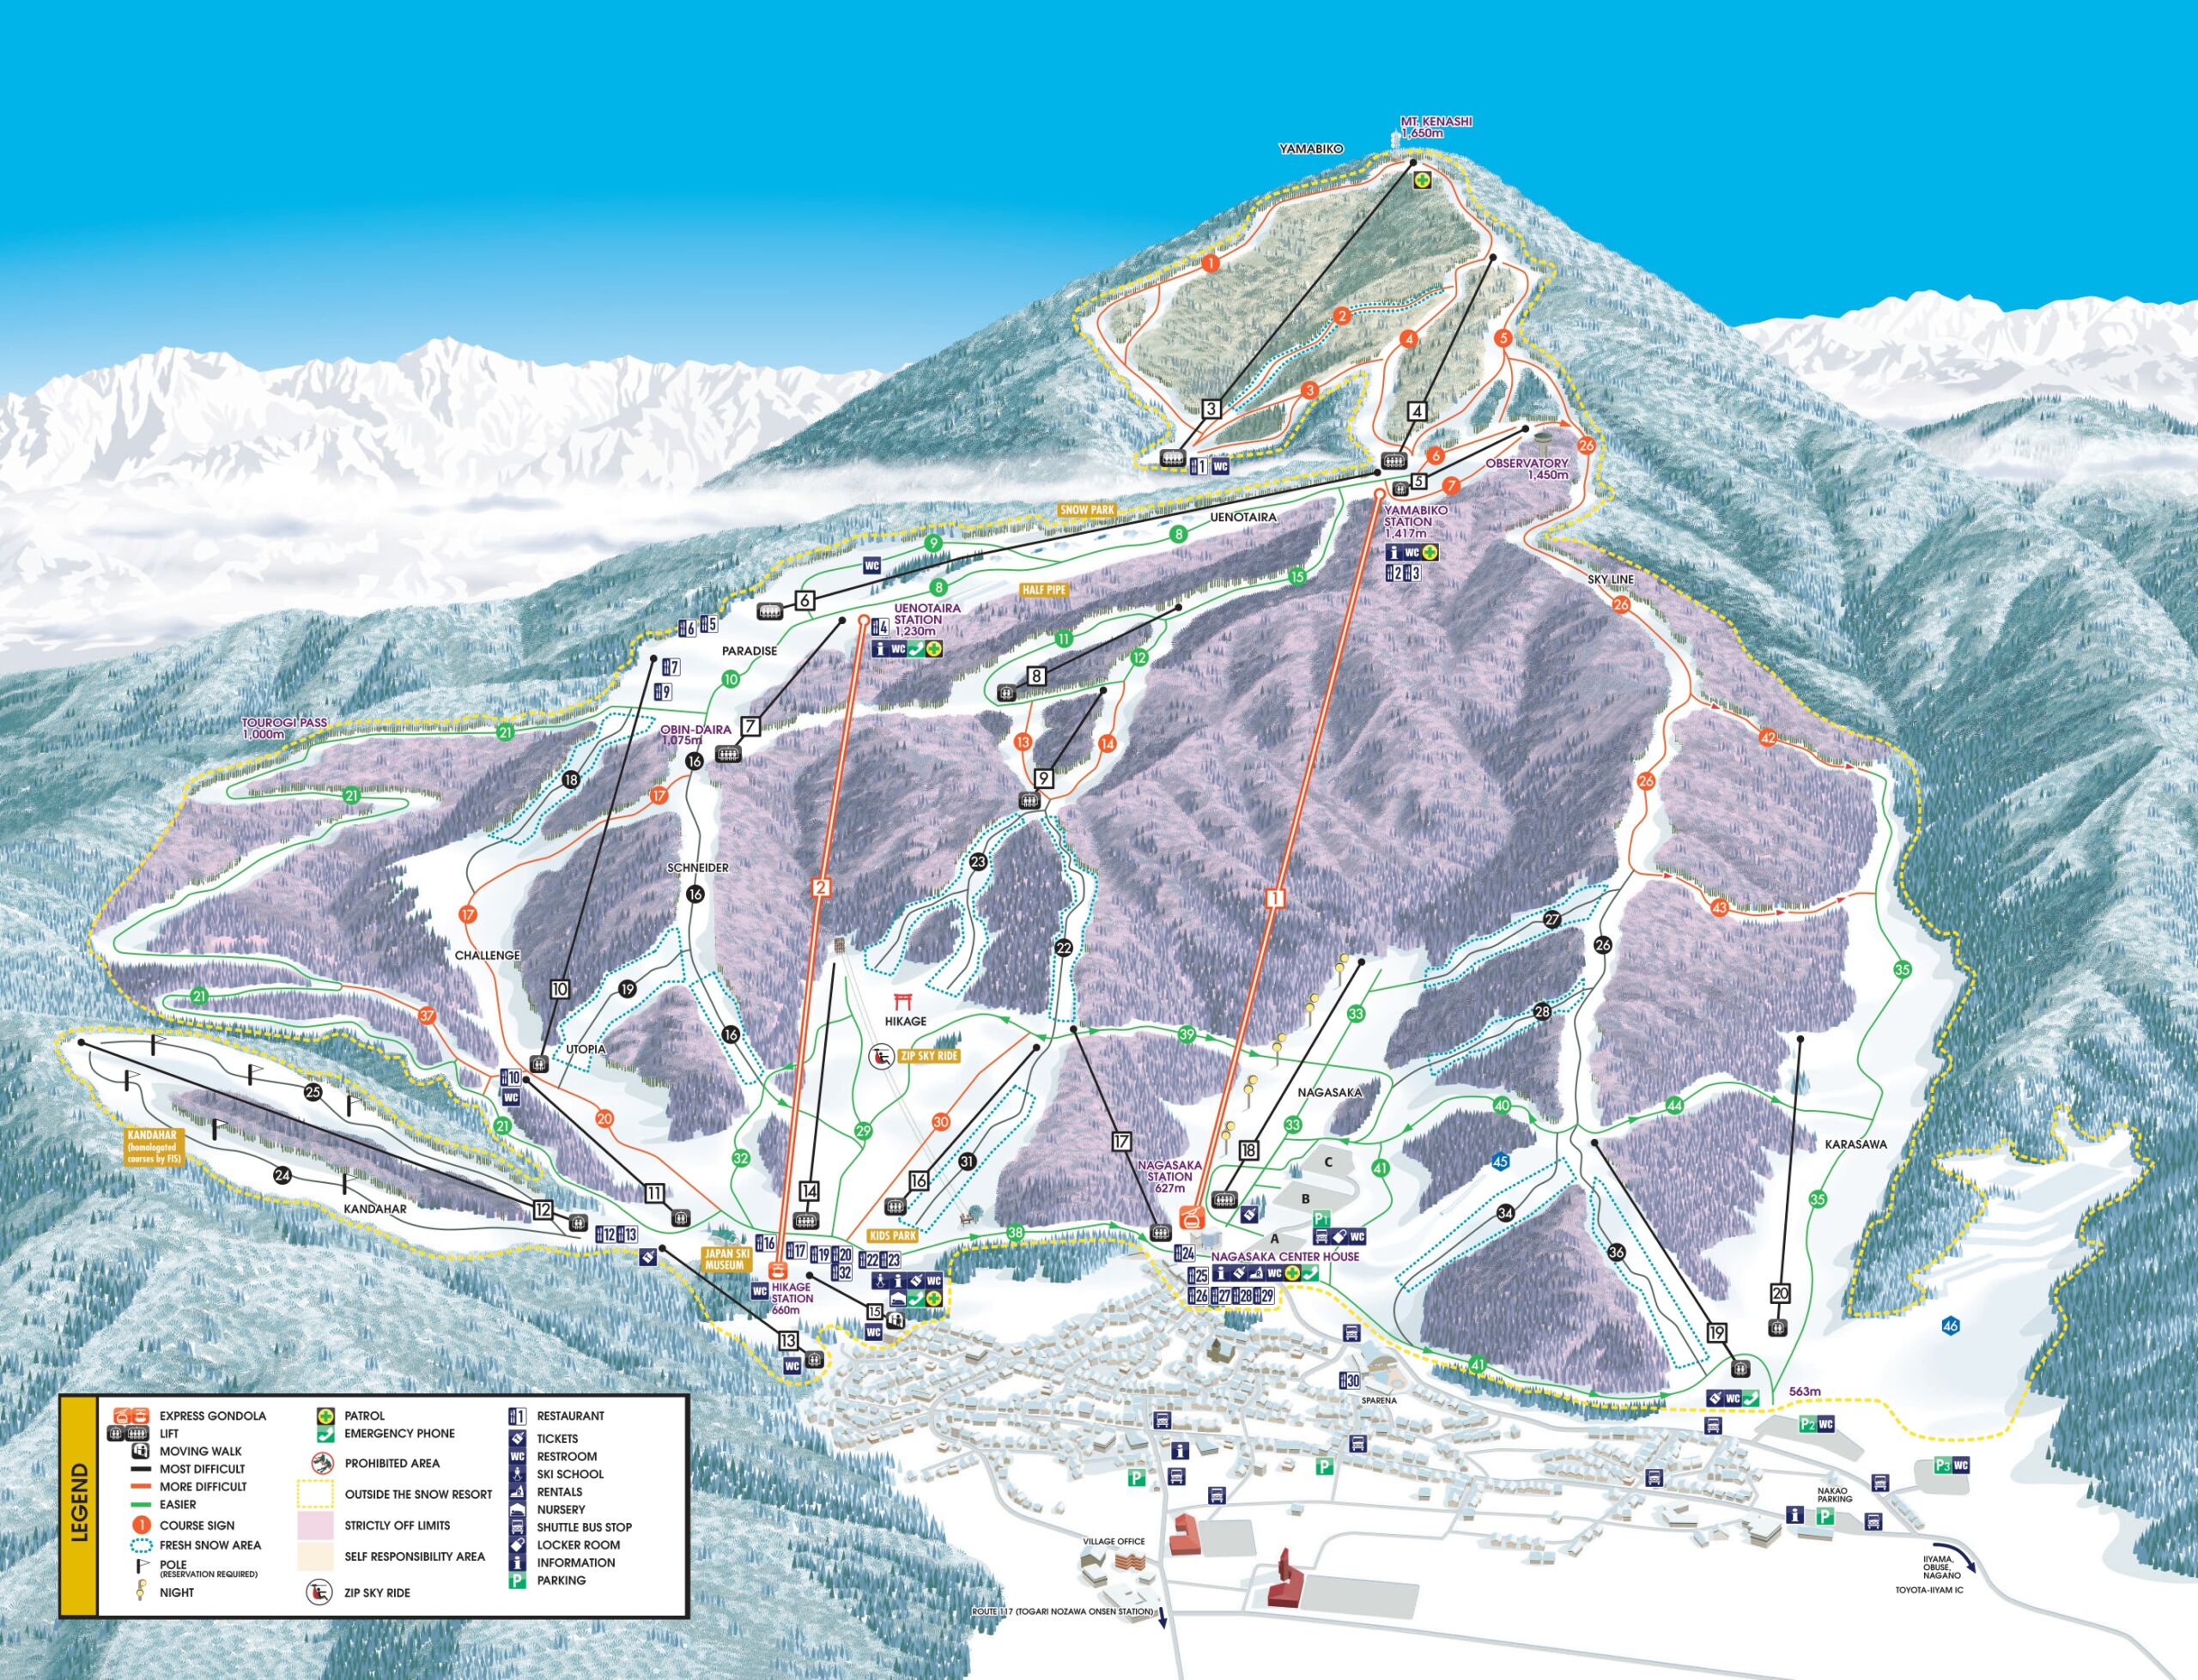 Ski resort info